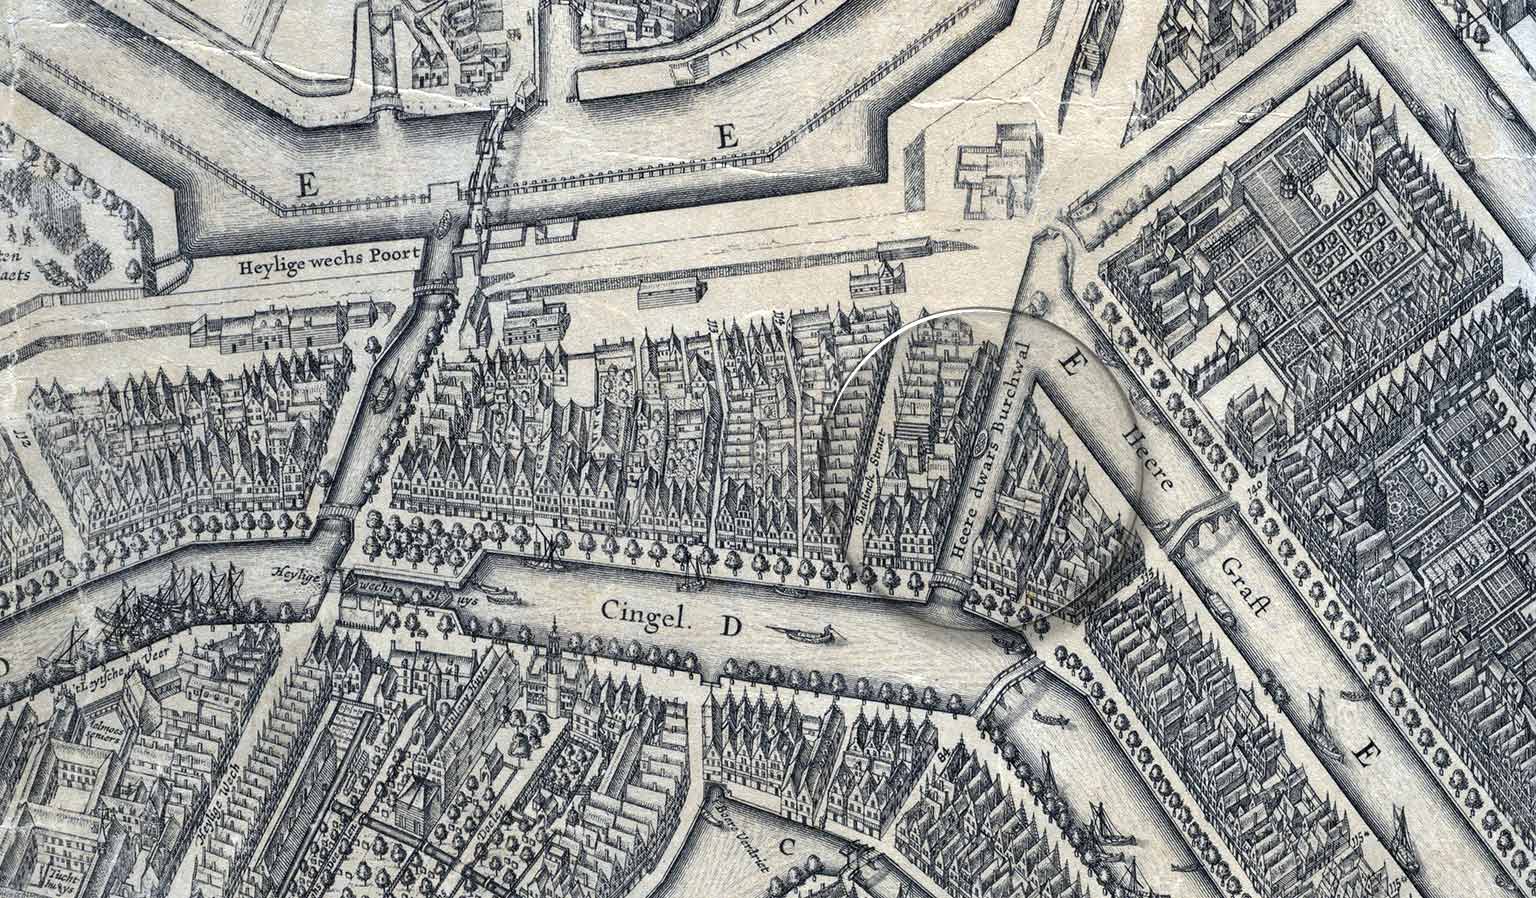 Beulingsloot, Amsterdam, op een kaart uit 1625 van Balthasar Florisz van Berckenrode